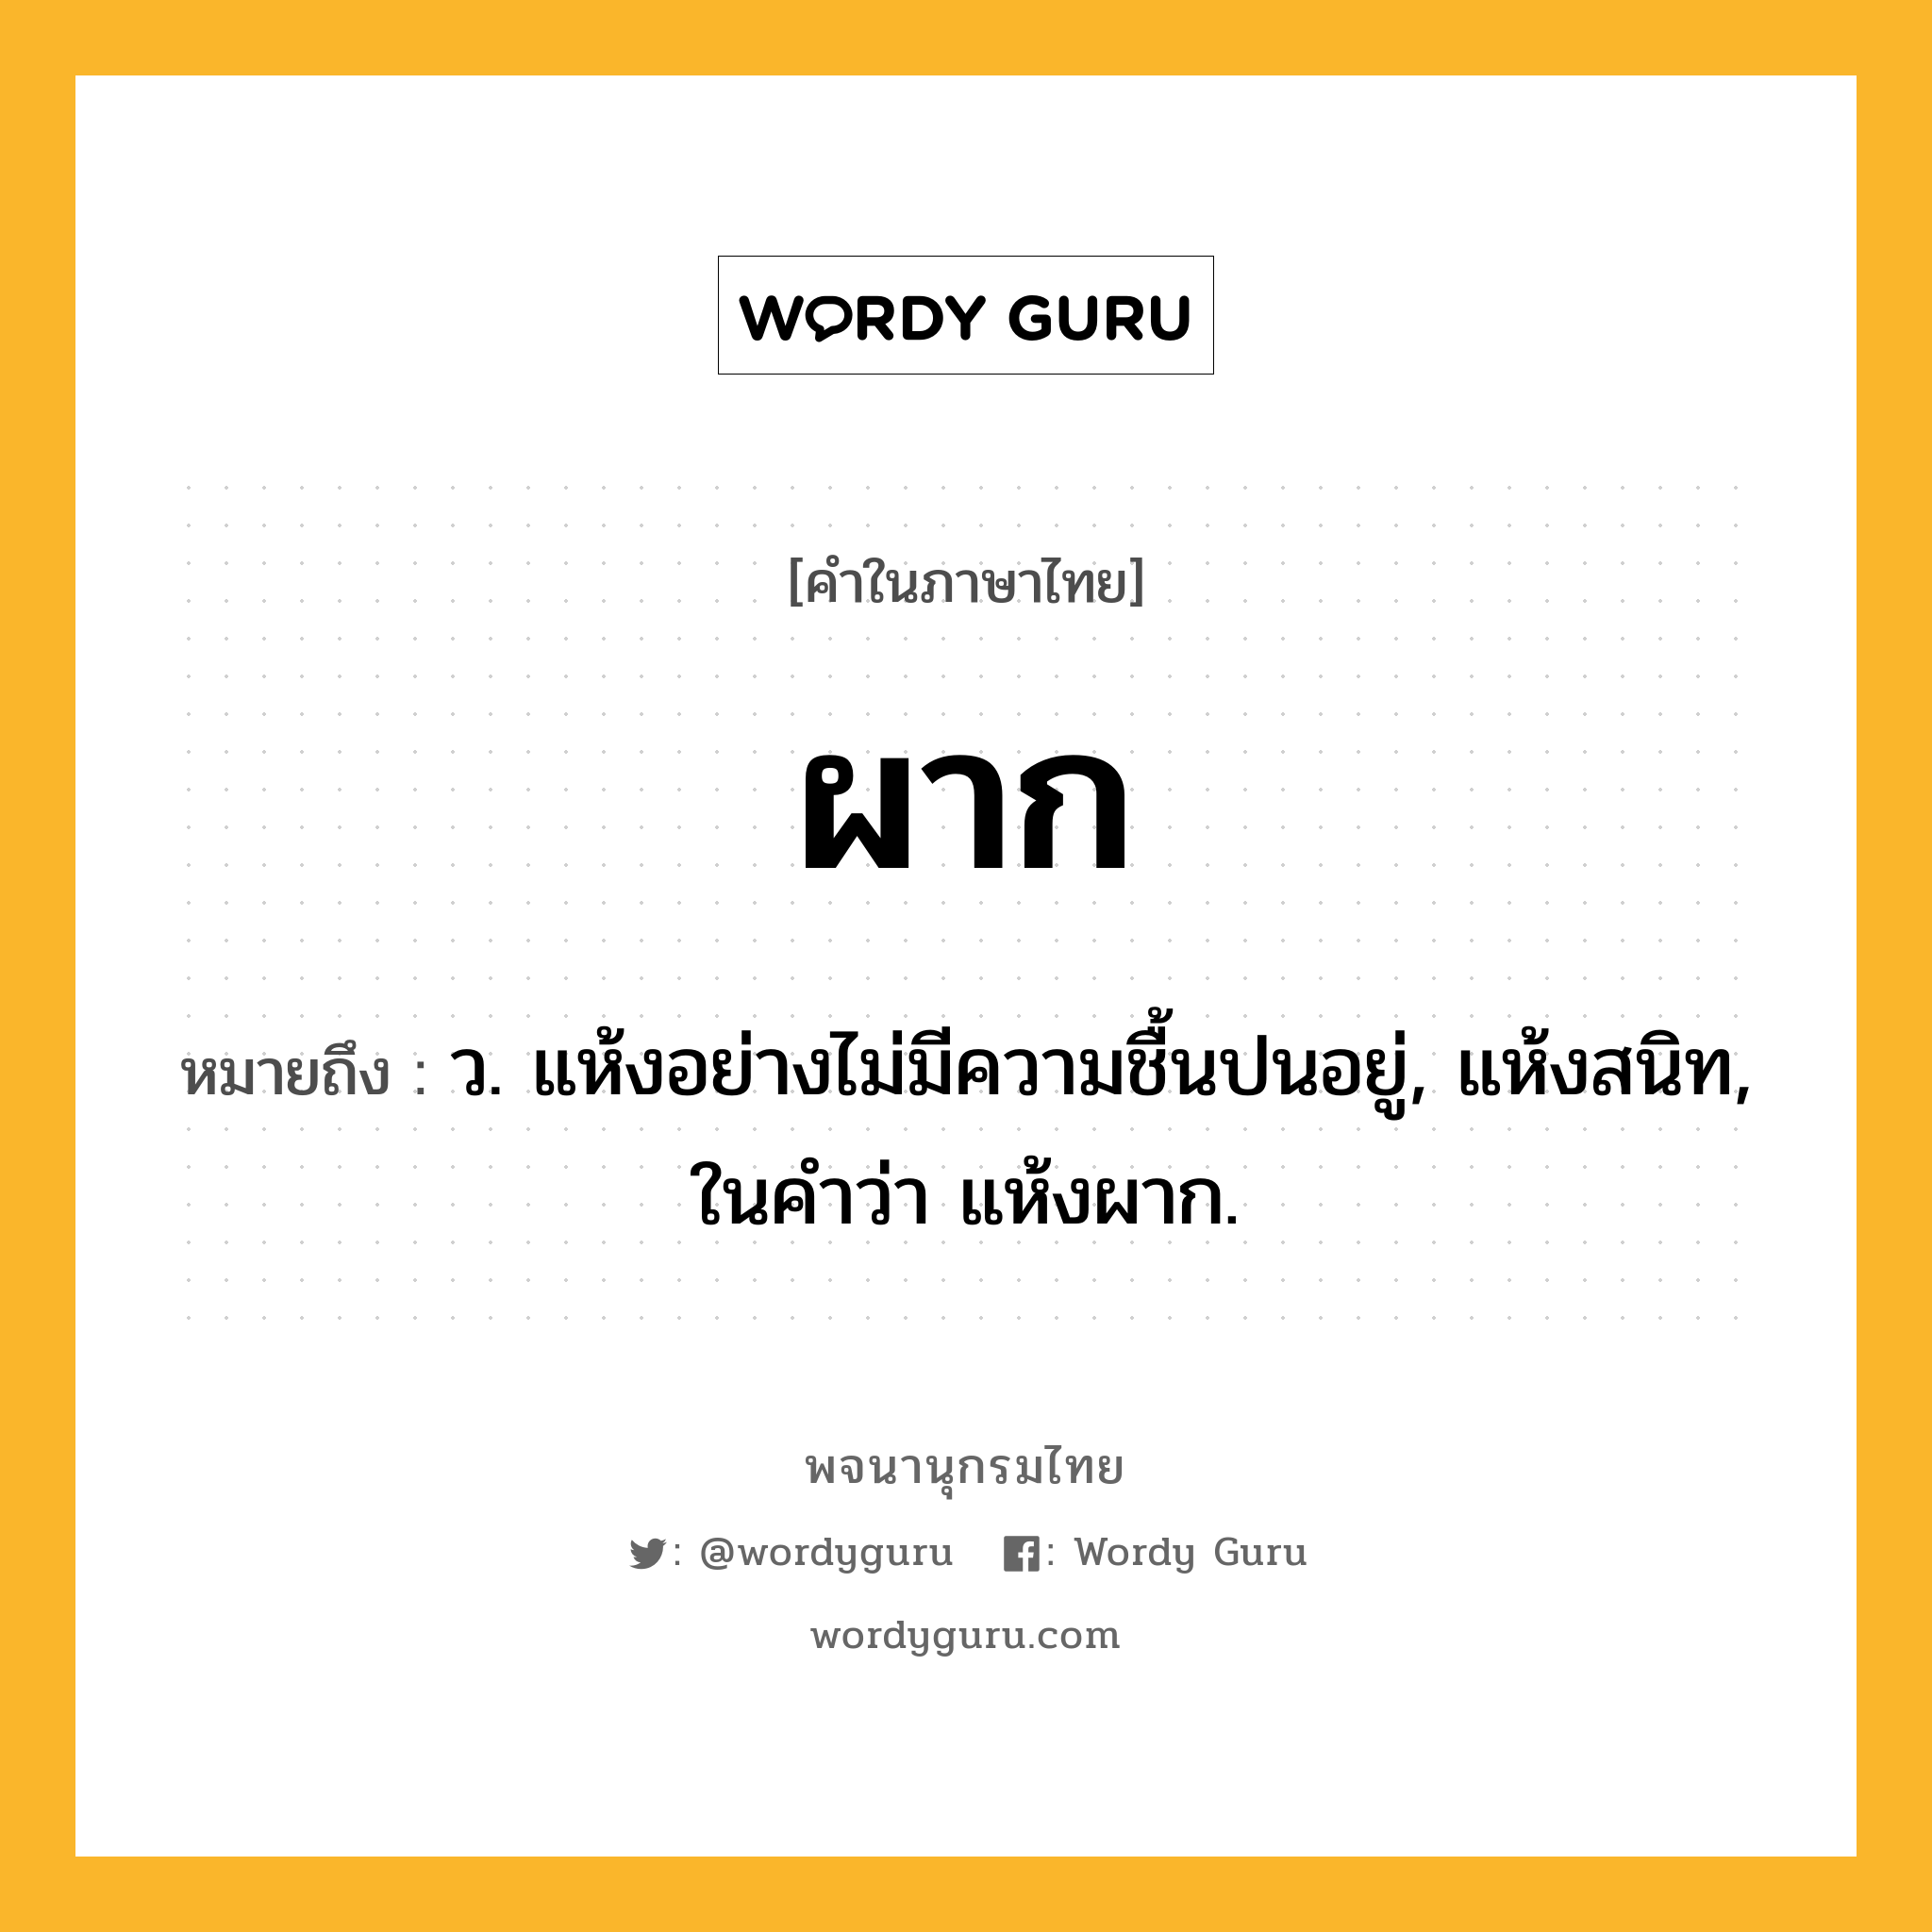 ผาก หมายถึงอะไร?, คำในภาษาไทย ผาก หมายถึง ว. แห้งอย่างไม่มีความชื้นปนอยู่, แห้งสนิท, ในคำว่า แห้งผาก.